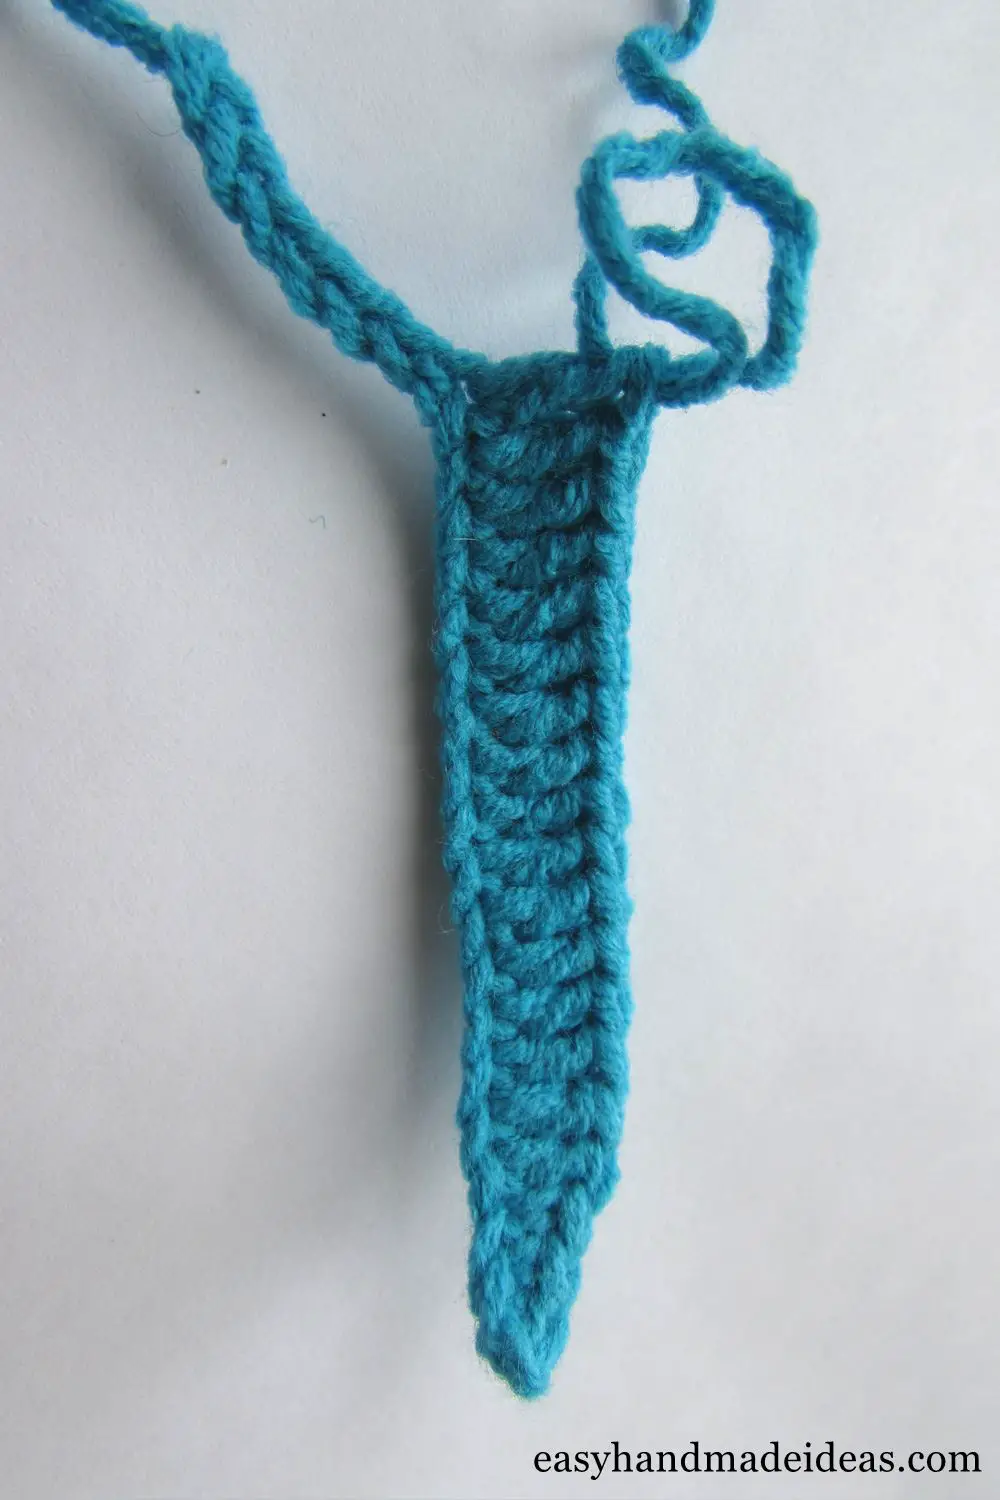 Using double crochet technique